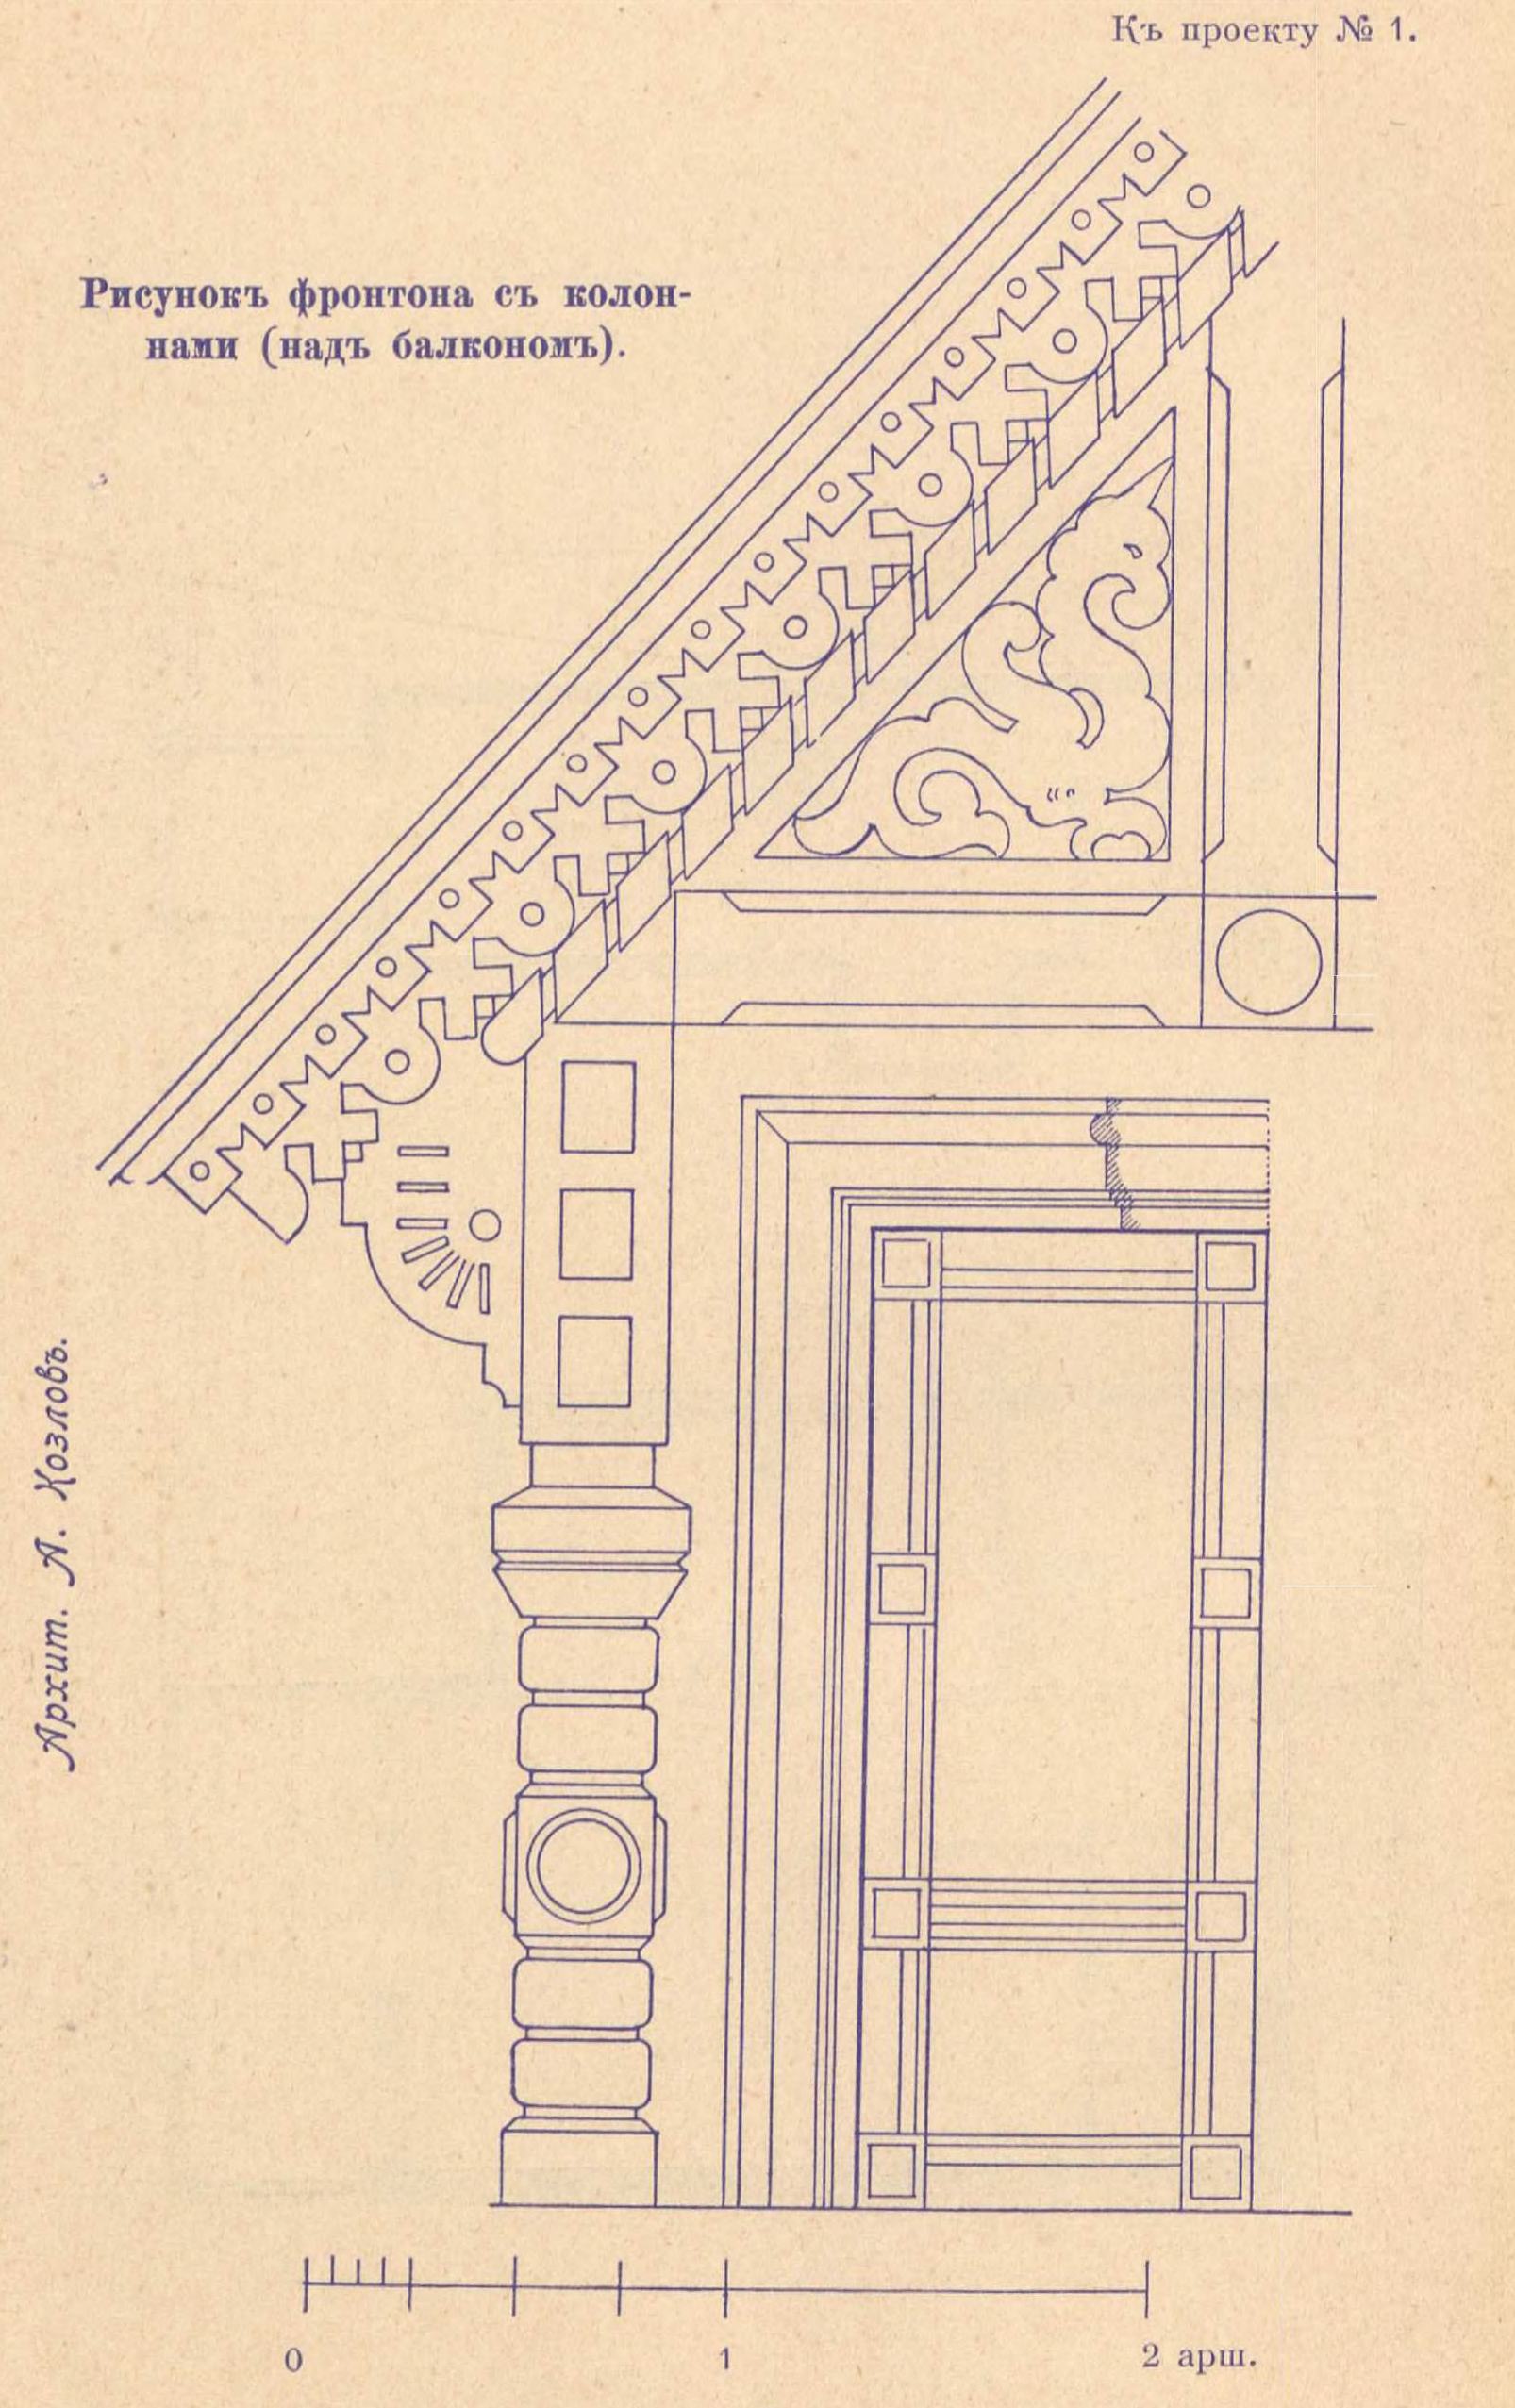 К проекту № 1. Архит. А. Козлов. Рисунок фронтона с колоннами (над балконом).